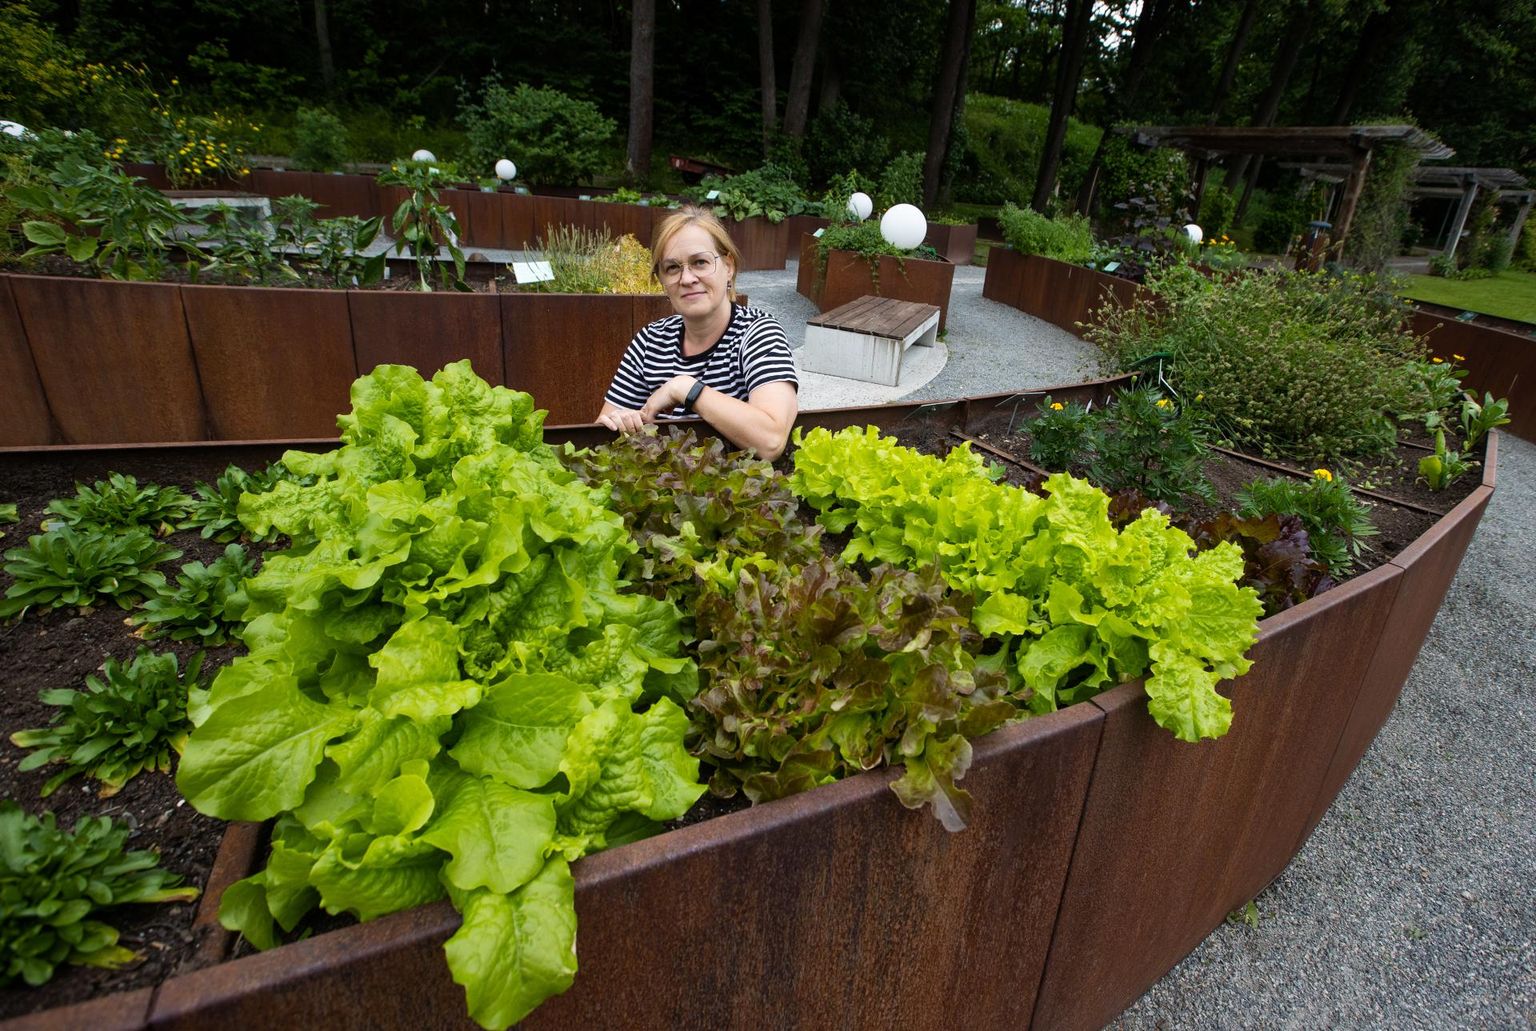 Tallinna botaanikaaia aednik Tiina Marjapuu ja tema hoolealused meelte aias - esiplaanil mitut sorti lehtsalatid.